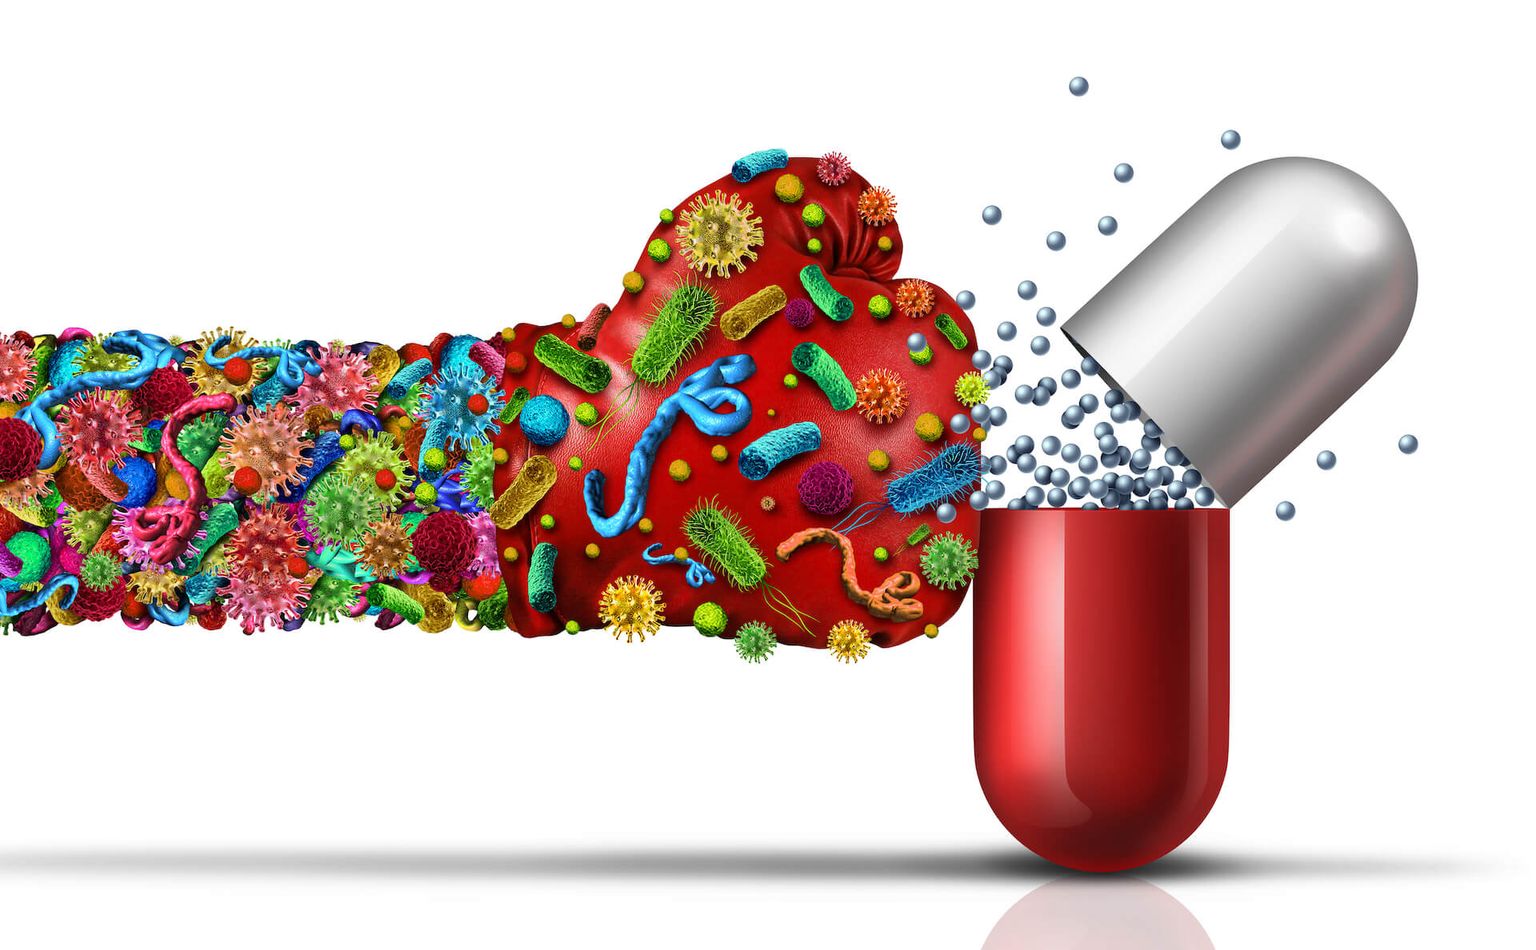 Gérmenes resistentes a los antibióticos como un virus o células bacterianas como una enfermedad viral mutada mortal que ataca una píldora con un aguijón como una enfermedad de la medicina con ilustraciones en 3D.